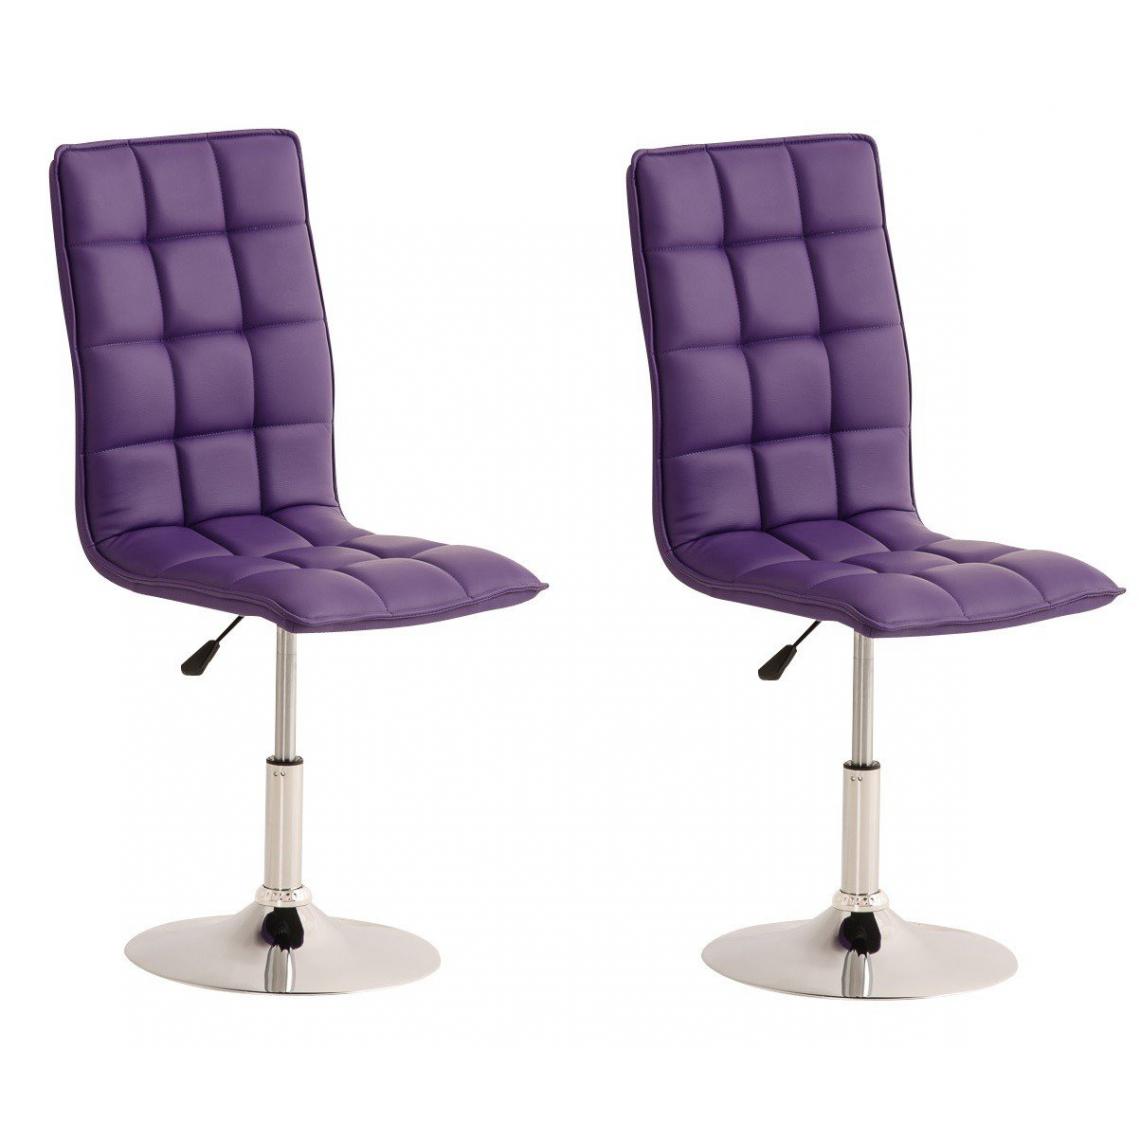 Decoshop26 - Lot de 2 chaises de salle à manger hauteur réglable en simili-cuir violet CDS10029 - Chaises